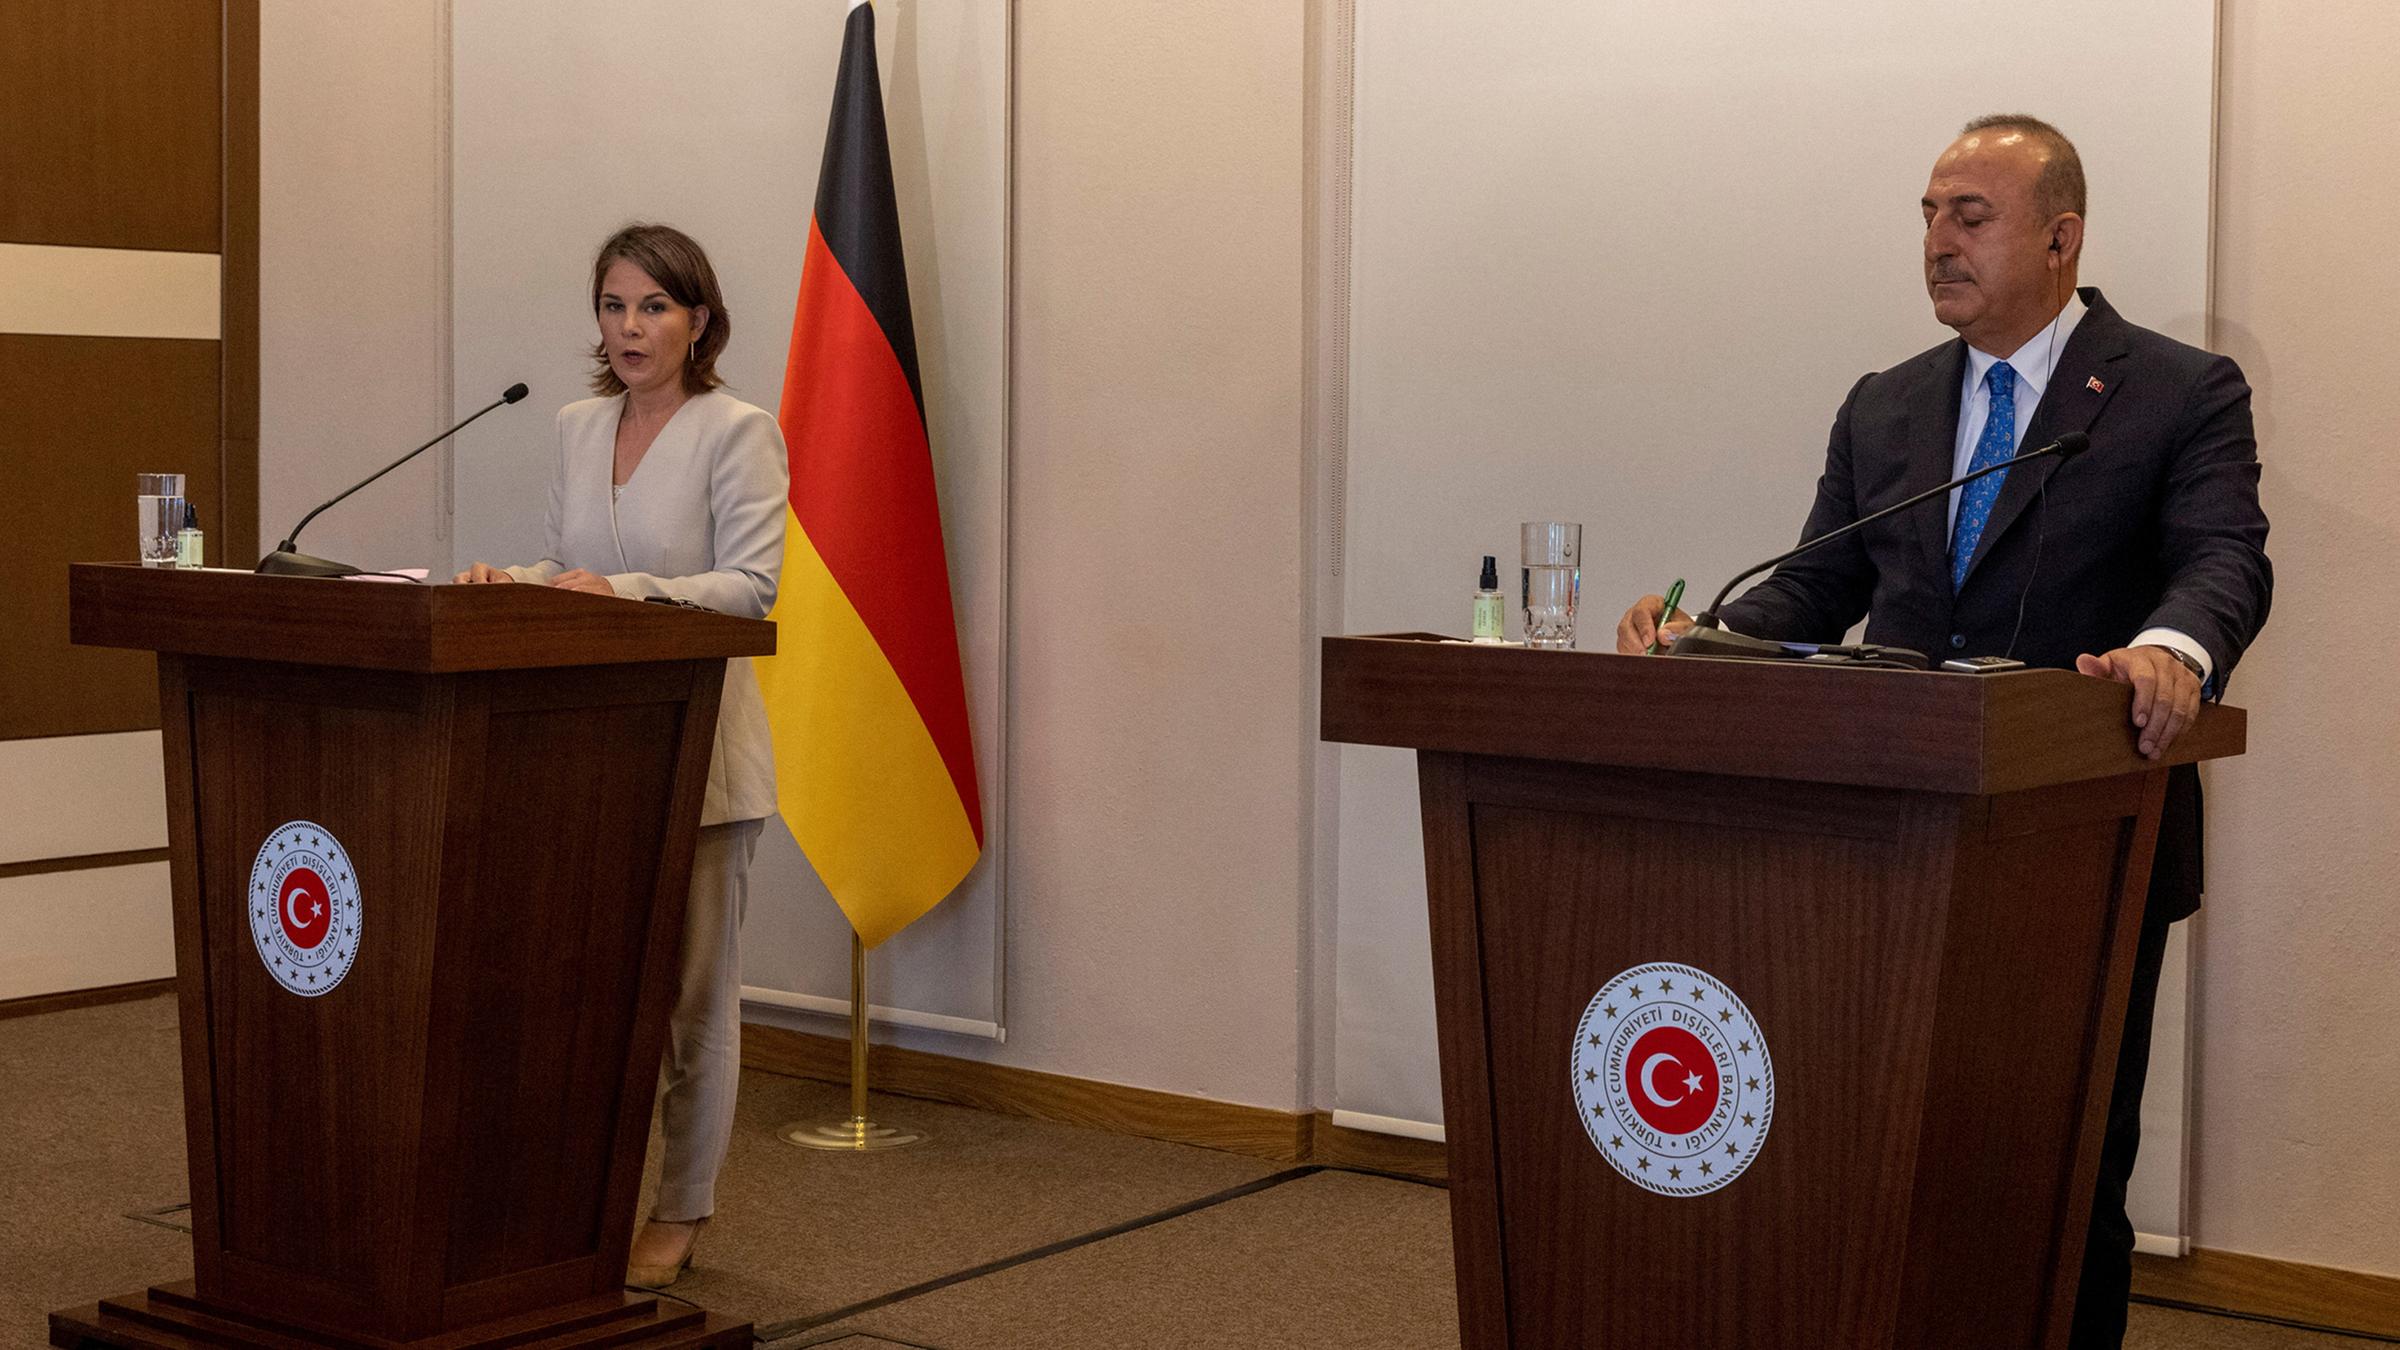 Annalena Baerbock und Mevlut Cavusoglu sprechen während einer Pressekonferenz